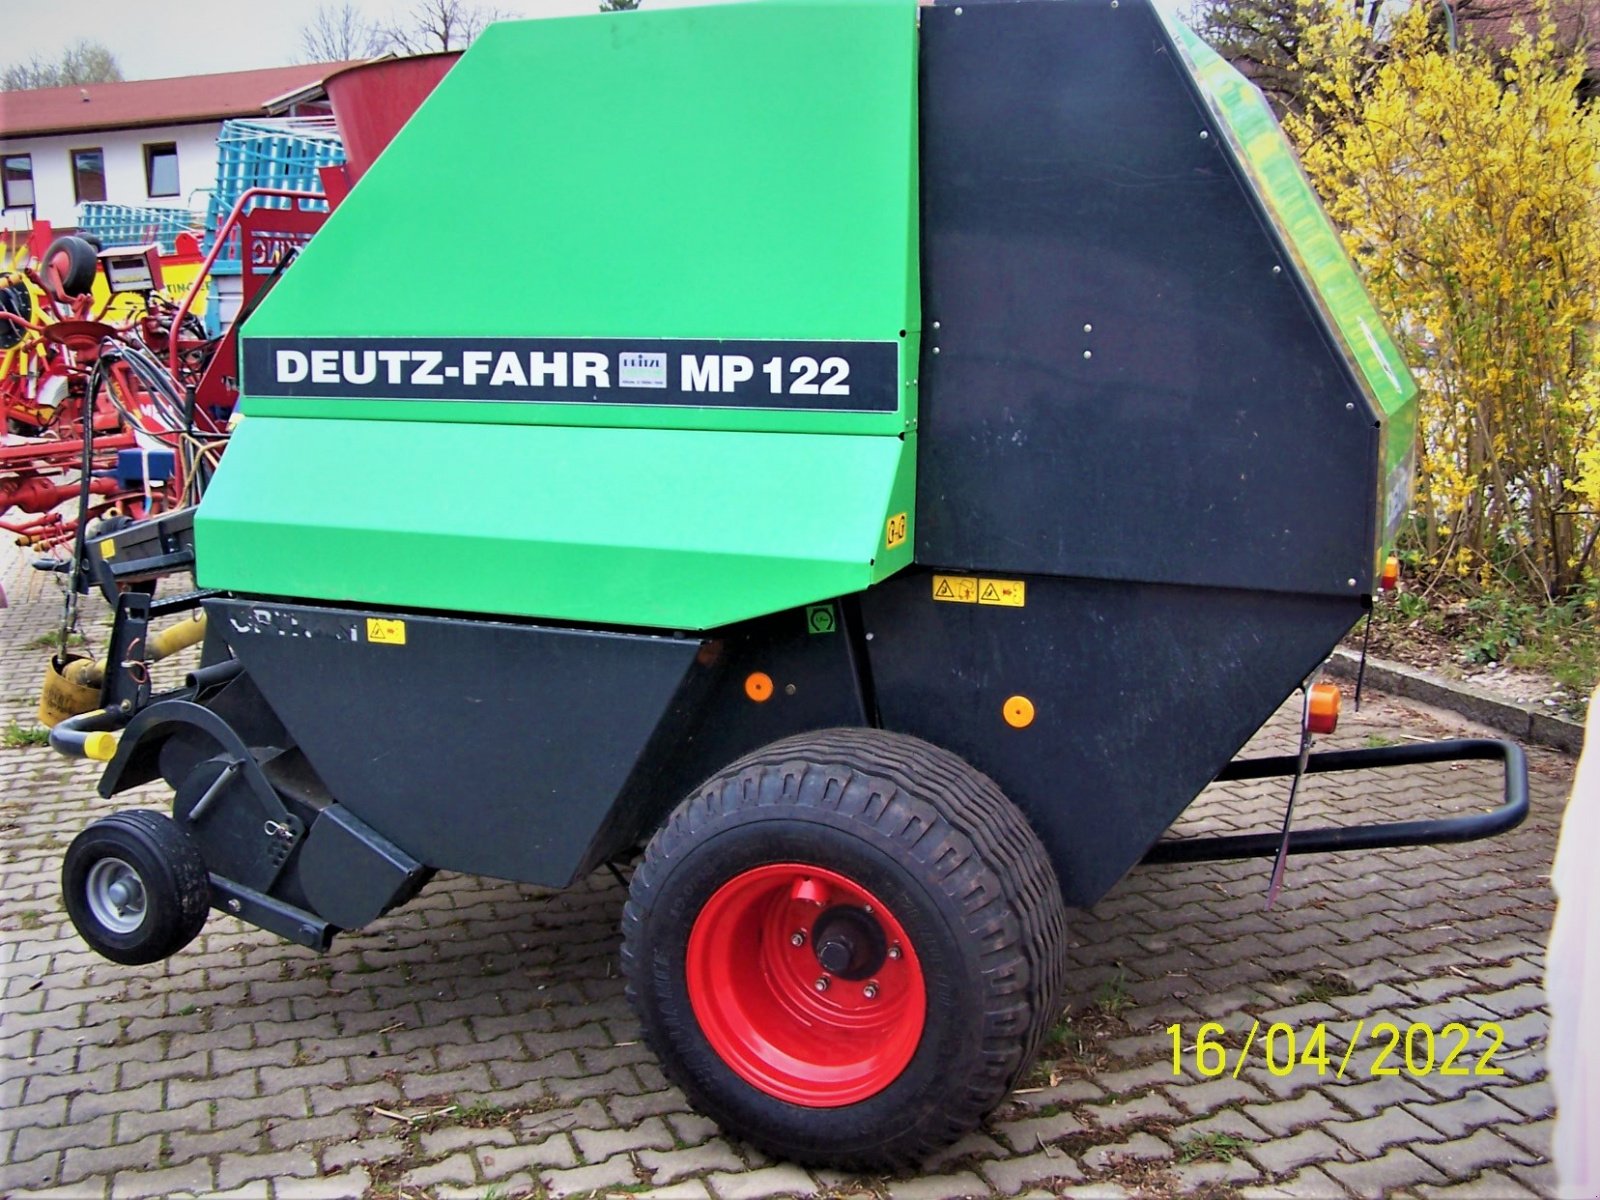 Rundballenpresse des Typs Deutz-Fahr MP 122, Gebrauchtmaschine in Murnau (Bild 2)